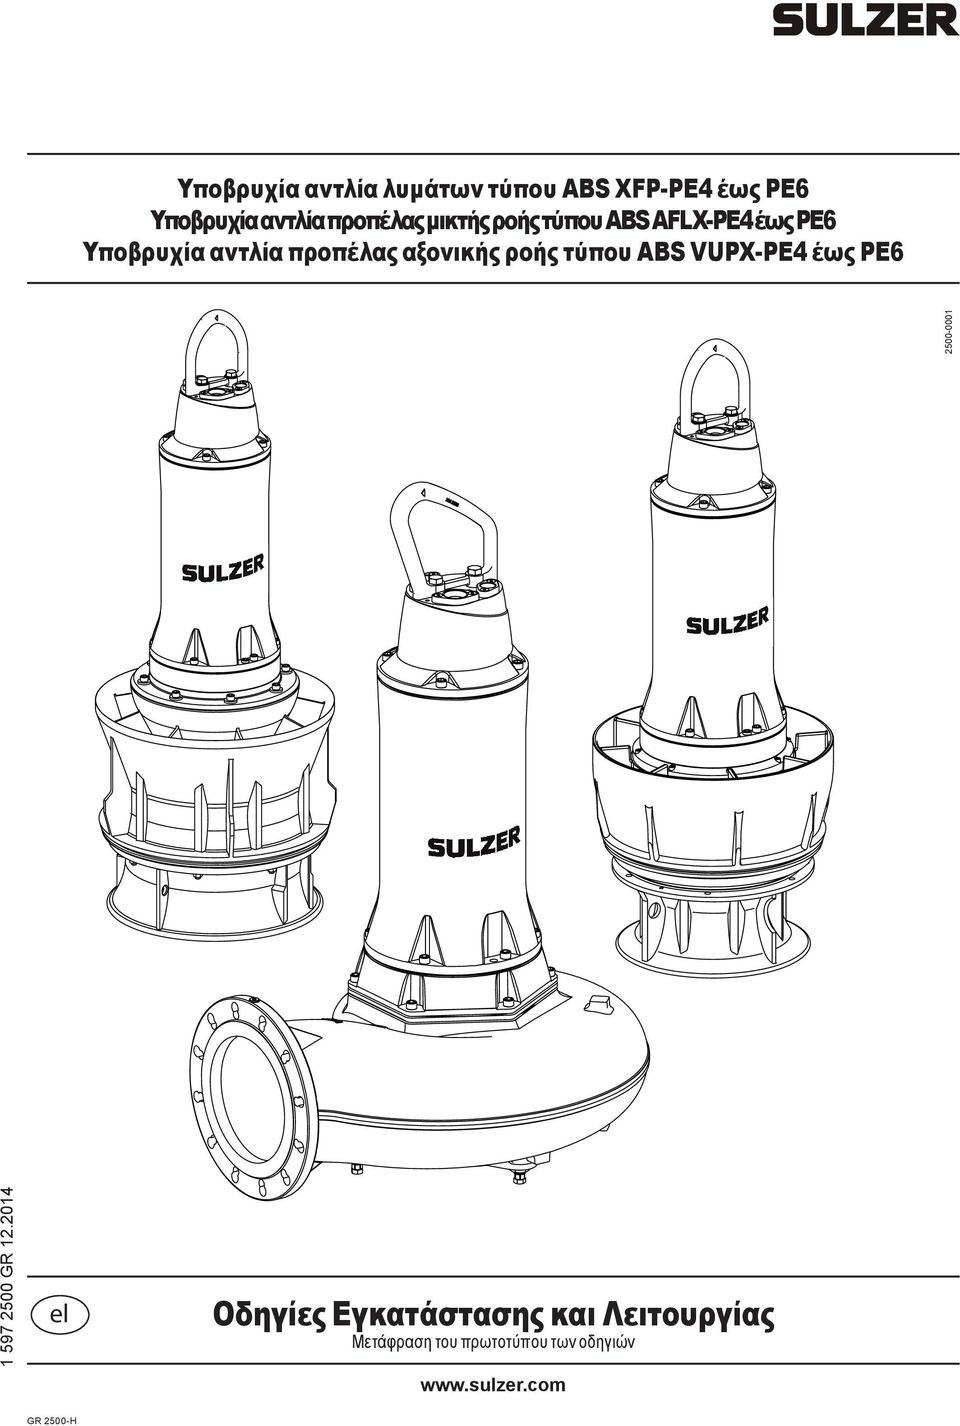 ροής τύπου ABS VUPX-PE4 έως PE6 2500-0001 1 597 2500 GR 12.